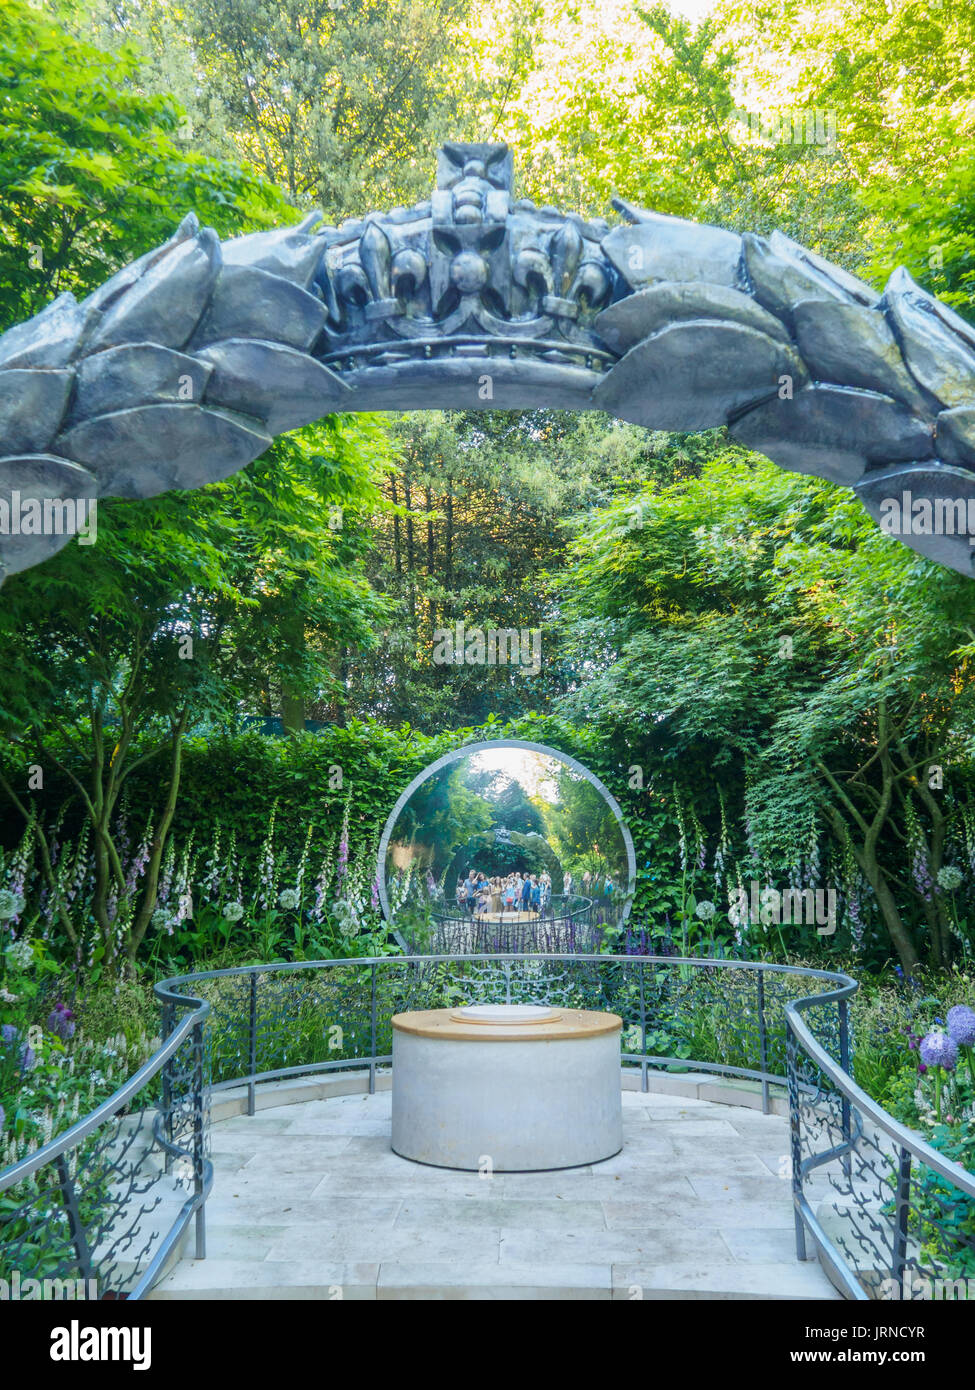 LONDON, Großbritannien - 25 Mai 2017: RHS Chelsea Flower Show 2017. Die cwgc Centenary Garten. Eine reflektierende Garten zum Gedenken an 100 Jahre des Commonwealth Wa Stockfoto